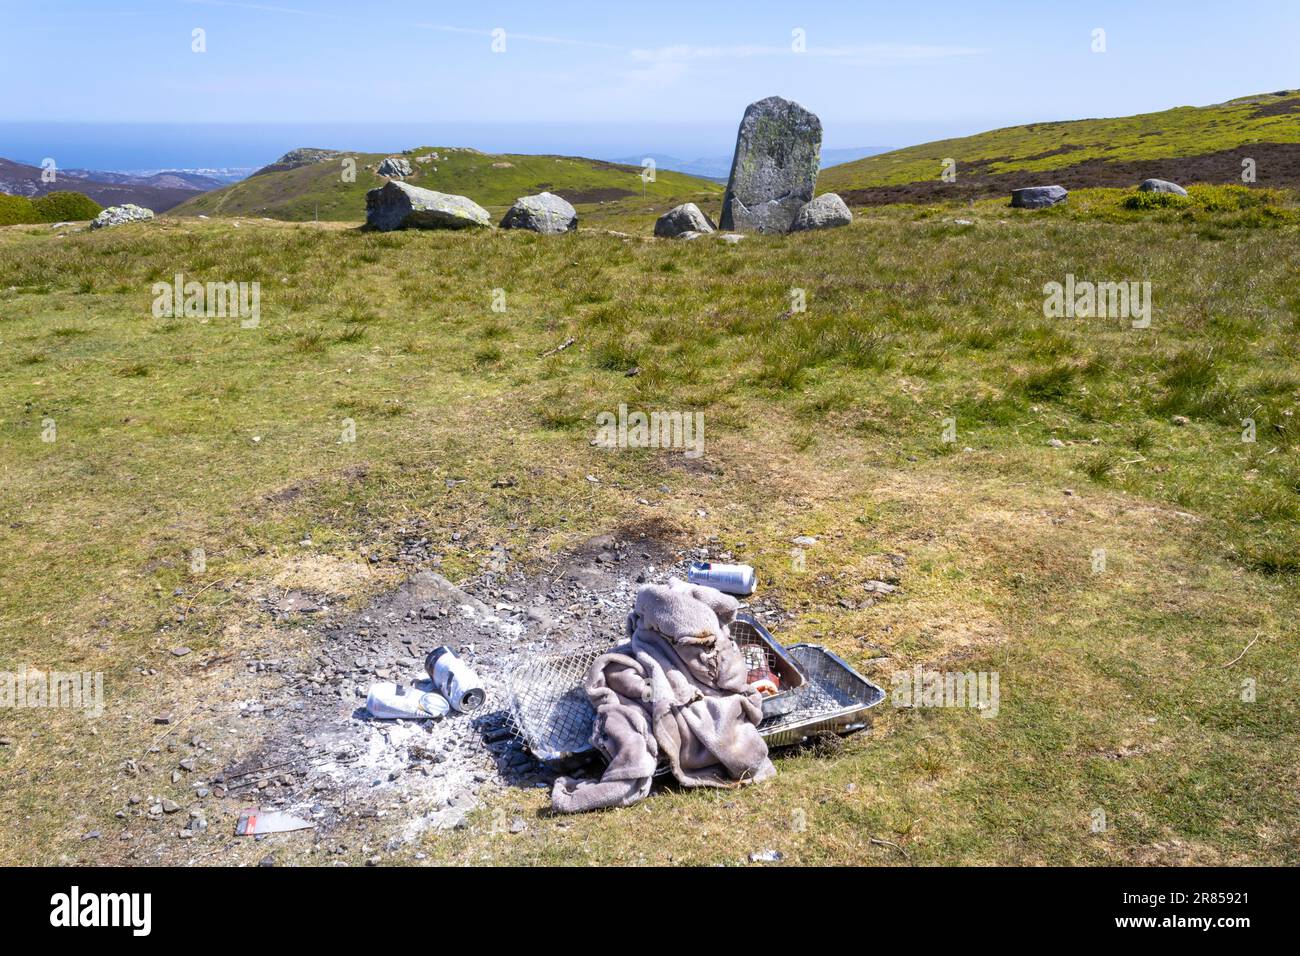 Faites griller la litière au Druid's Circle, ou Meini Hirion en gallois, au-dessus du village de Penmaenmawr, Gwynedd, pays de Galles, Royaume-Uni. Banque D'Images